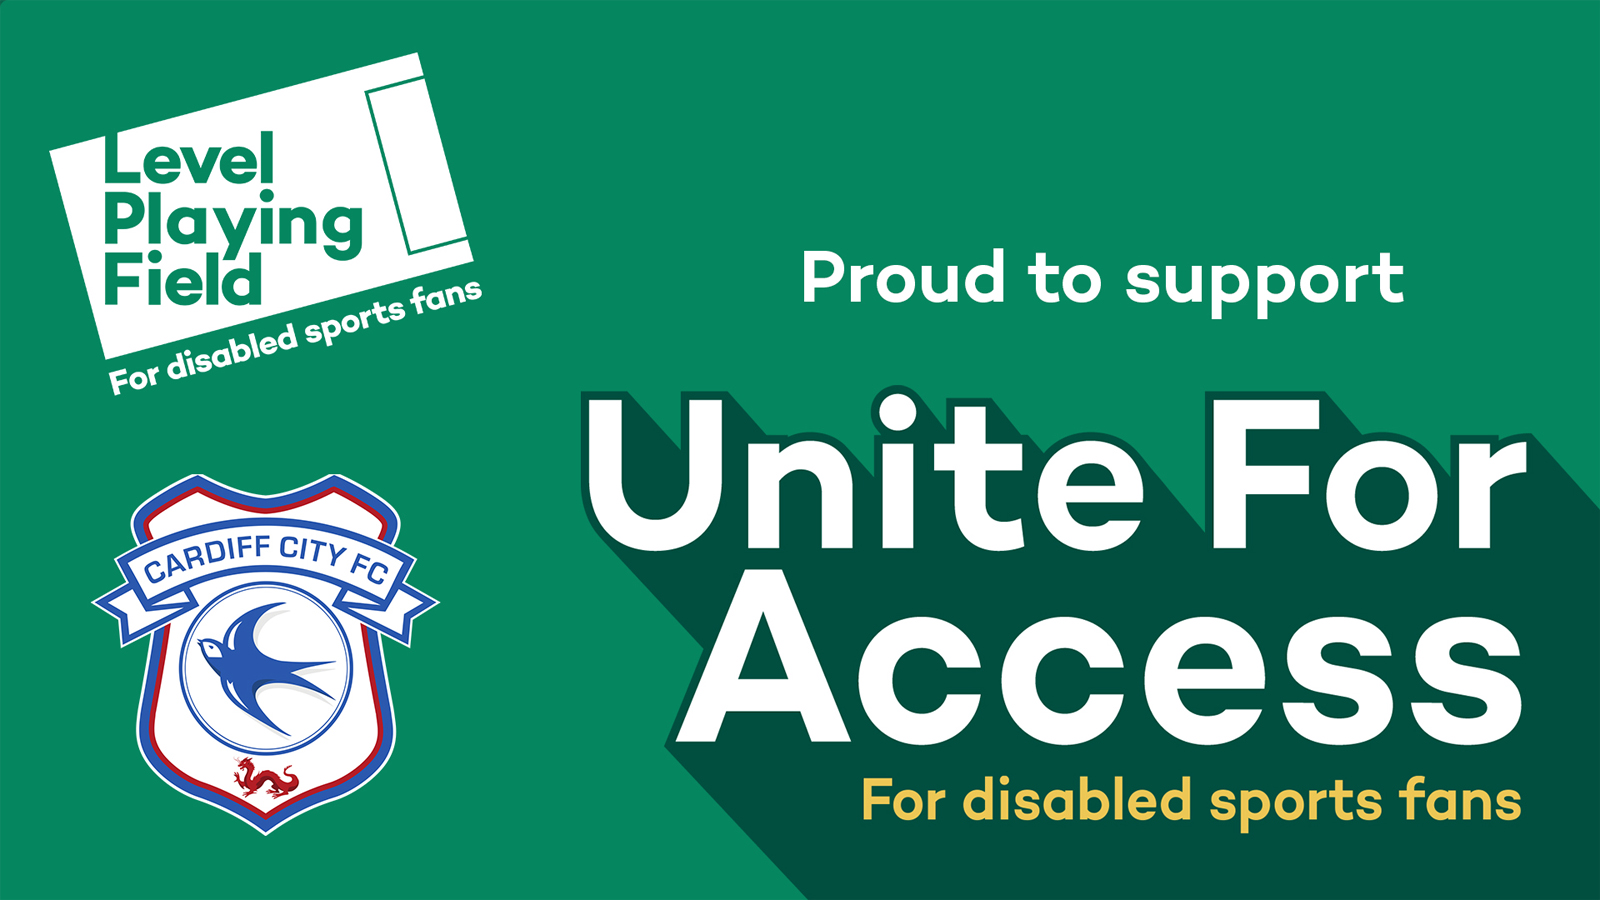 Unite for Access